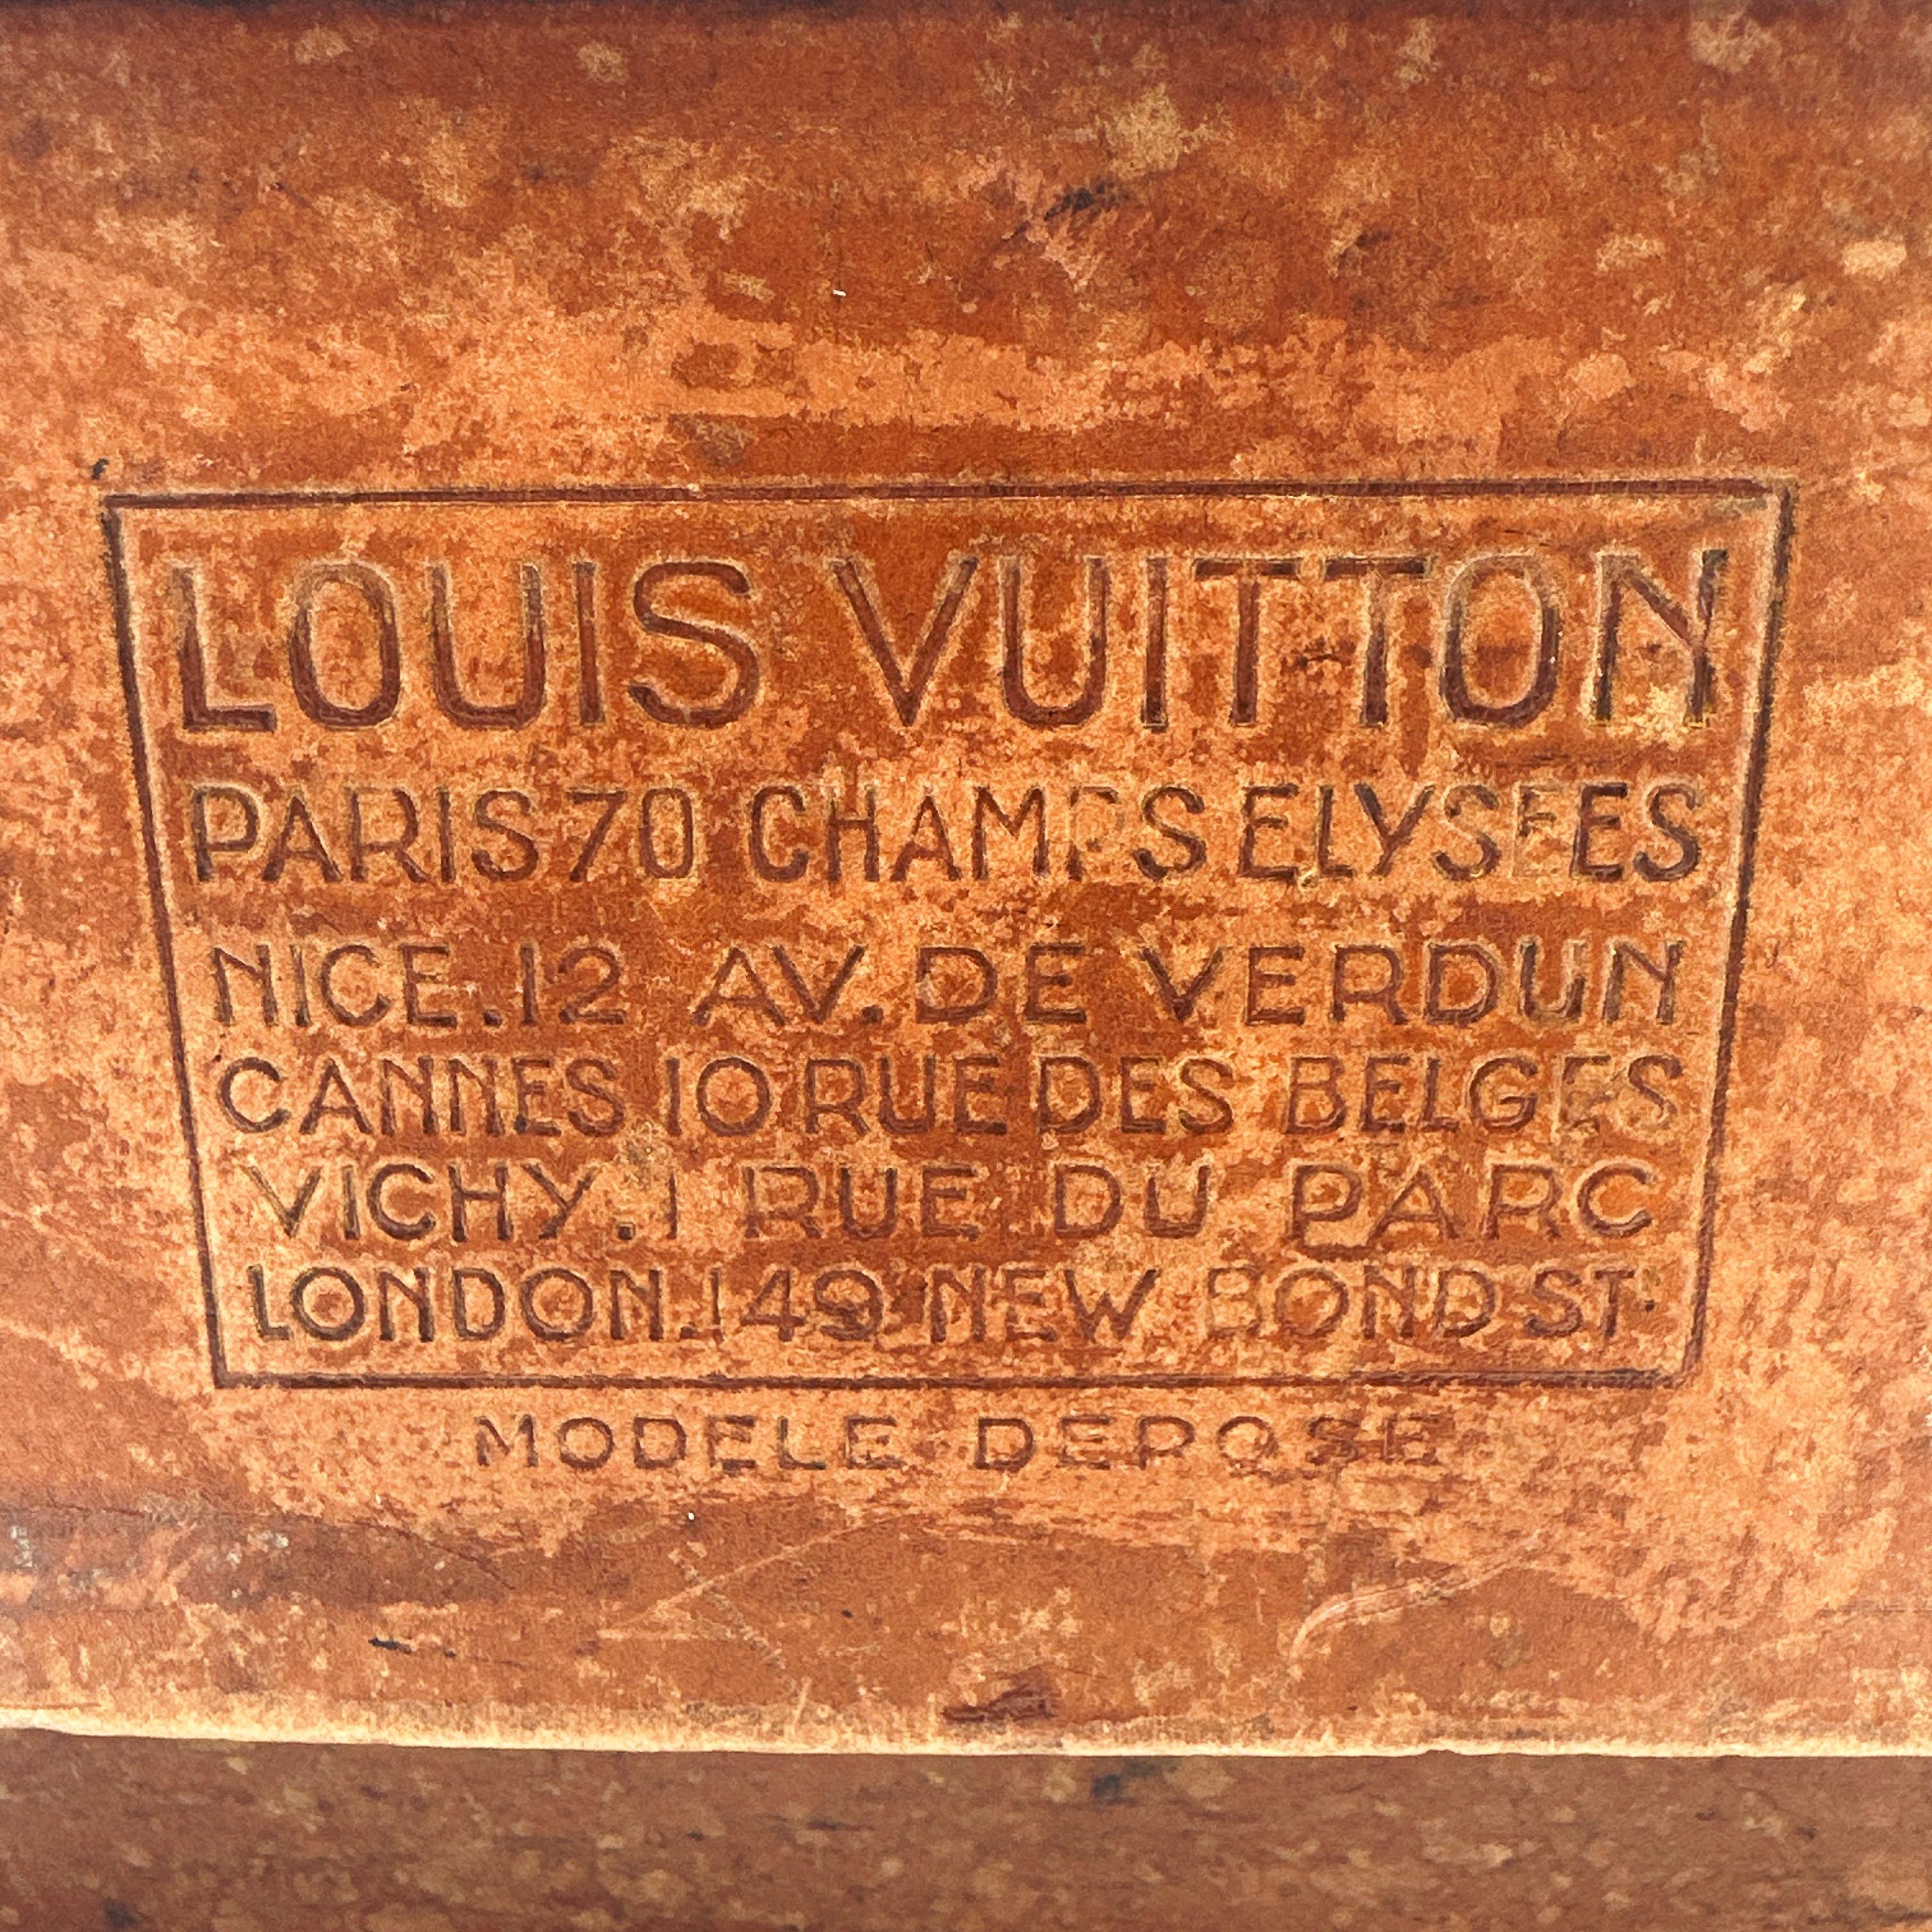 Hier ist eine wunderbare Vintage LOUIS VUITTON MARMOTTE Sample Box. Diese aus Verbundmaterial gefertigte und mit Nietenleder verstärkte Box diente zur Aufbewahrung von Mustern, um die Produktpalette potenziellen Kunden präsentieren zu können. Es war